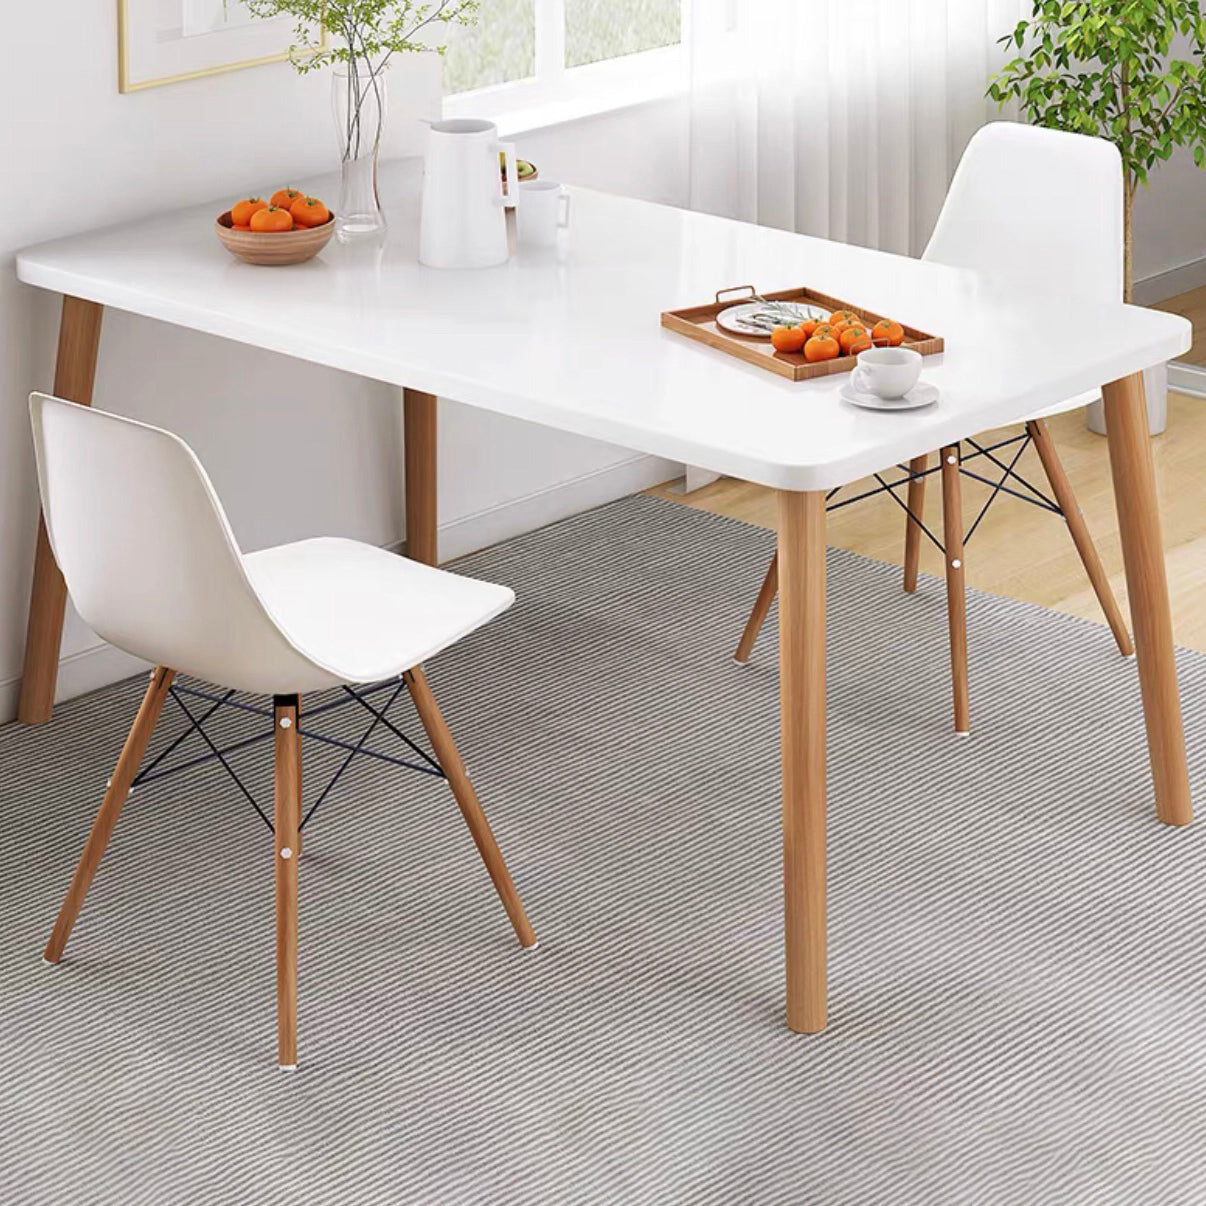 Set da pranzo in legno di altezza standard con 4 gambe in legno marrone chiaro per mobili da pranzo